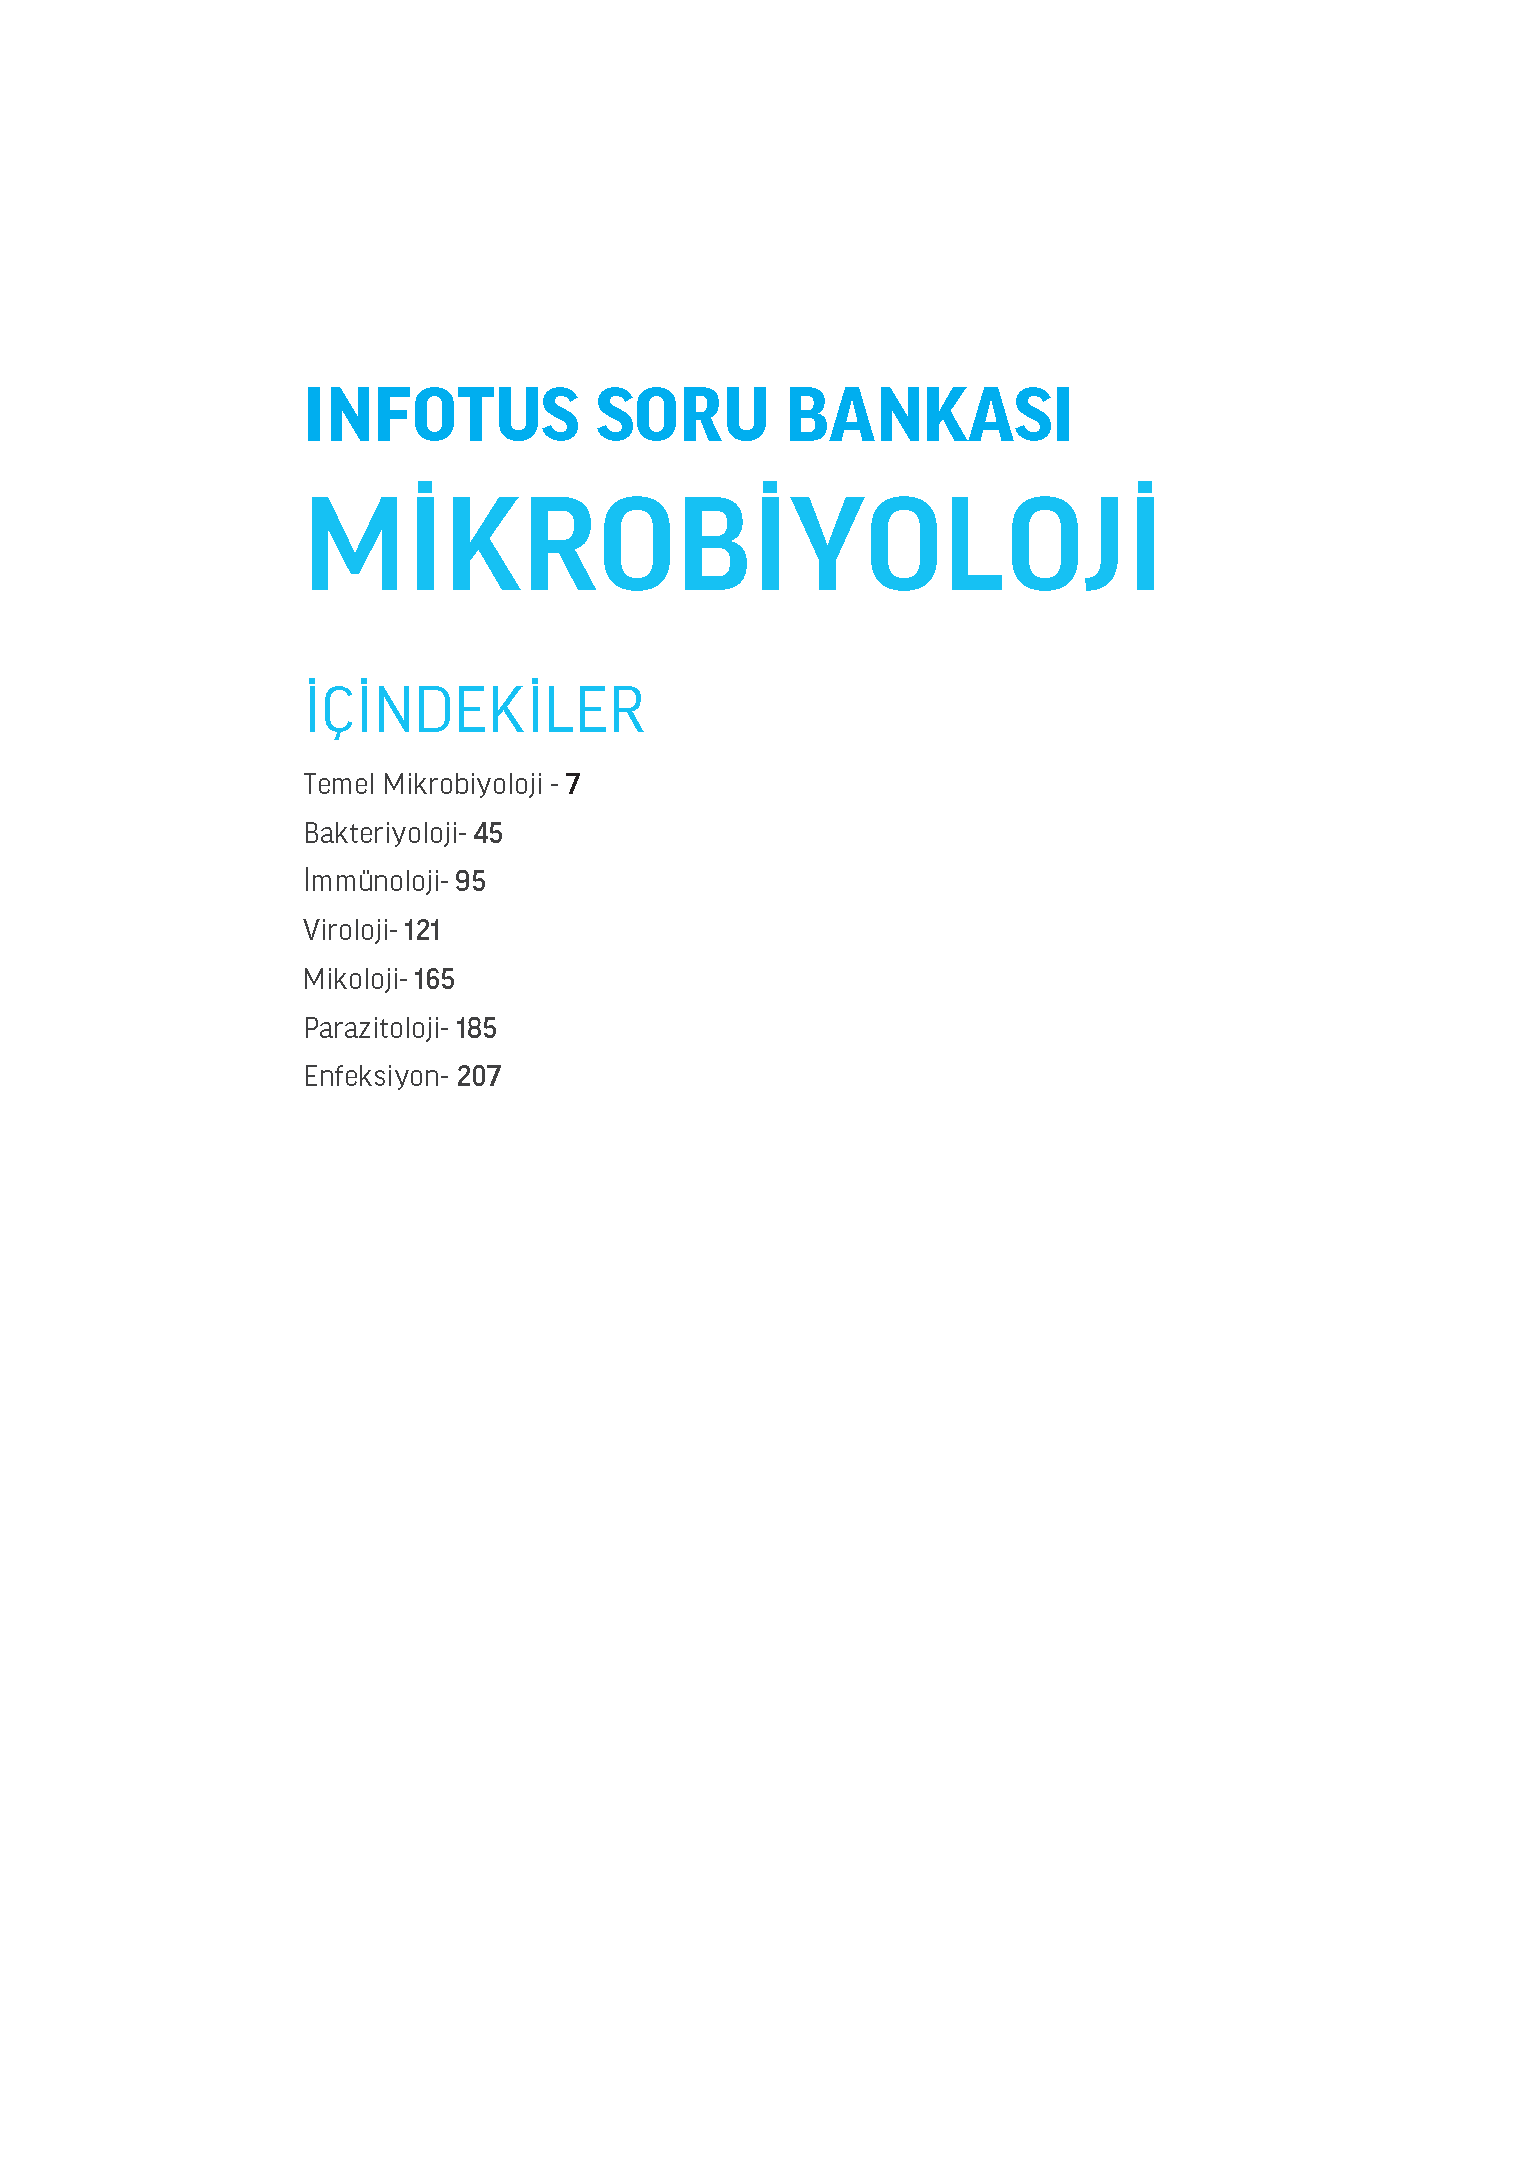 INFOTUS SORU BANKASI MIKROBIYOLOJI_Page_003